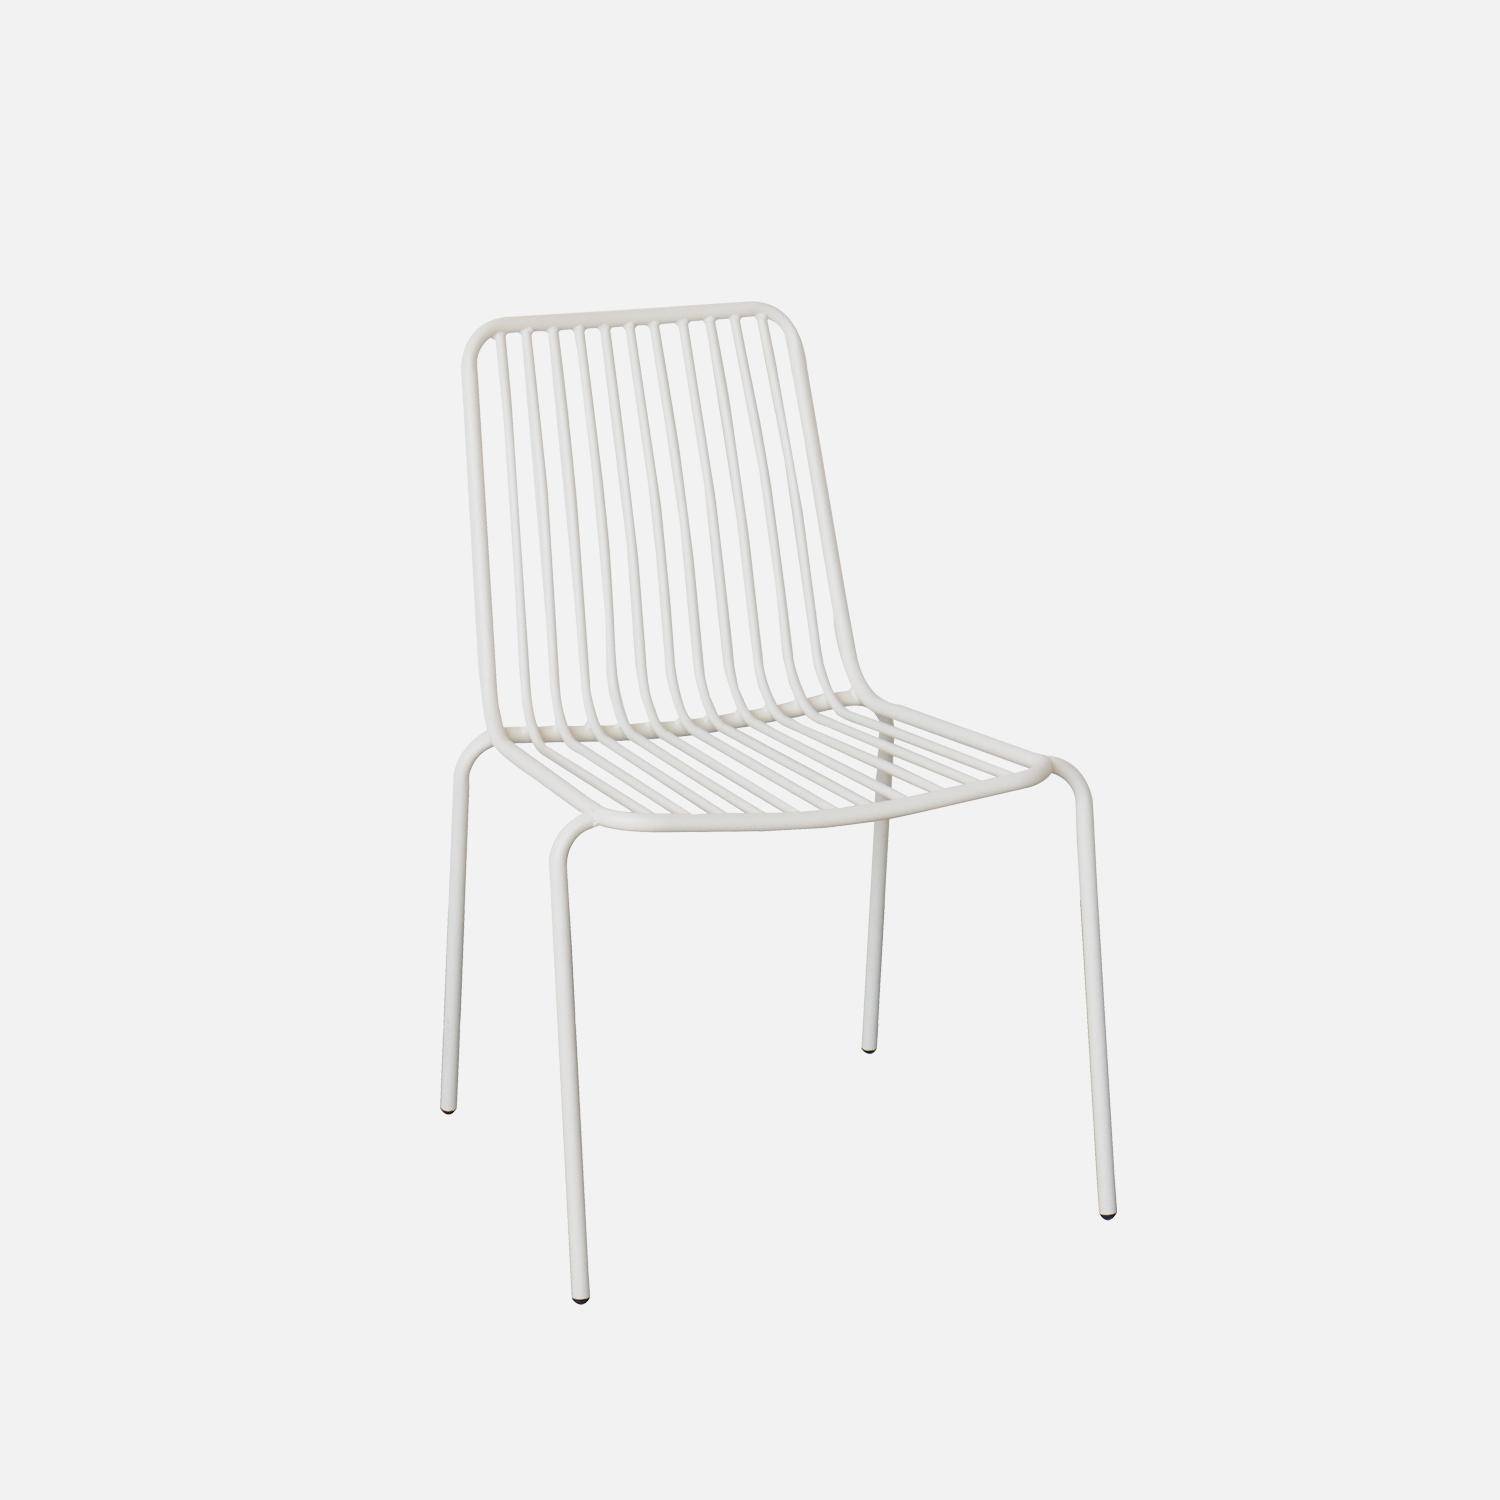 Lot de 2 chaises de jardin en acier blanc , empilables, design linéaire ,sweeek,Photo2